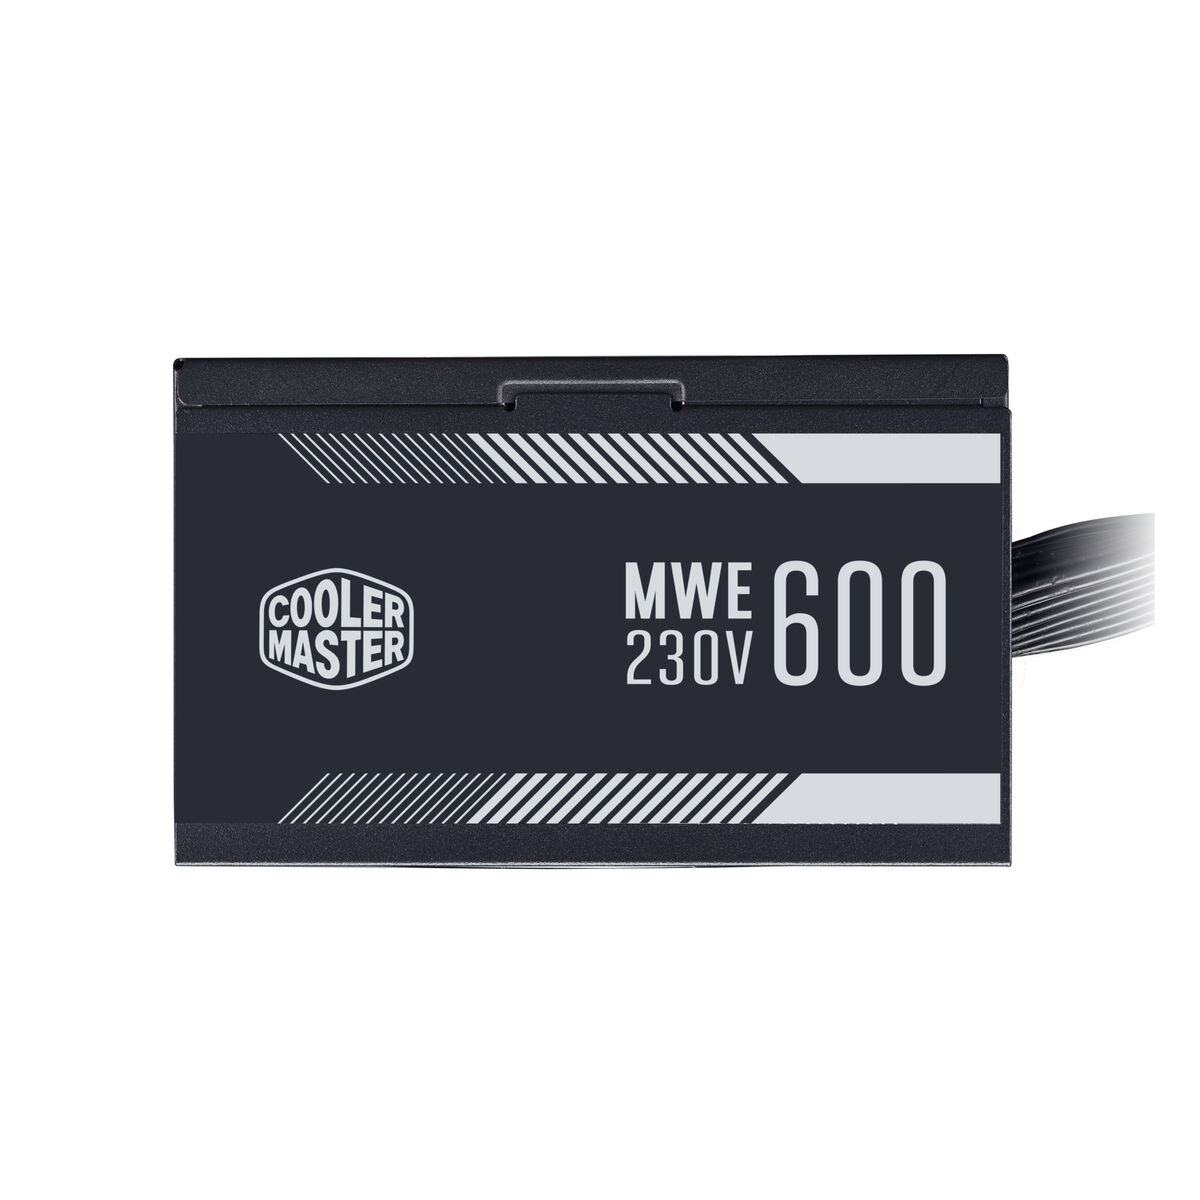 COOLER MASTER MWE 600 White V2 600 Watt 230V - PC Netzteil